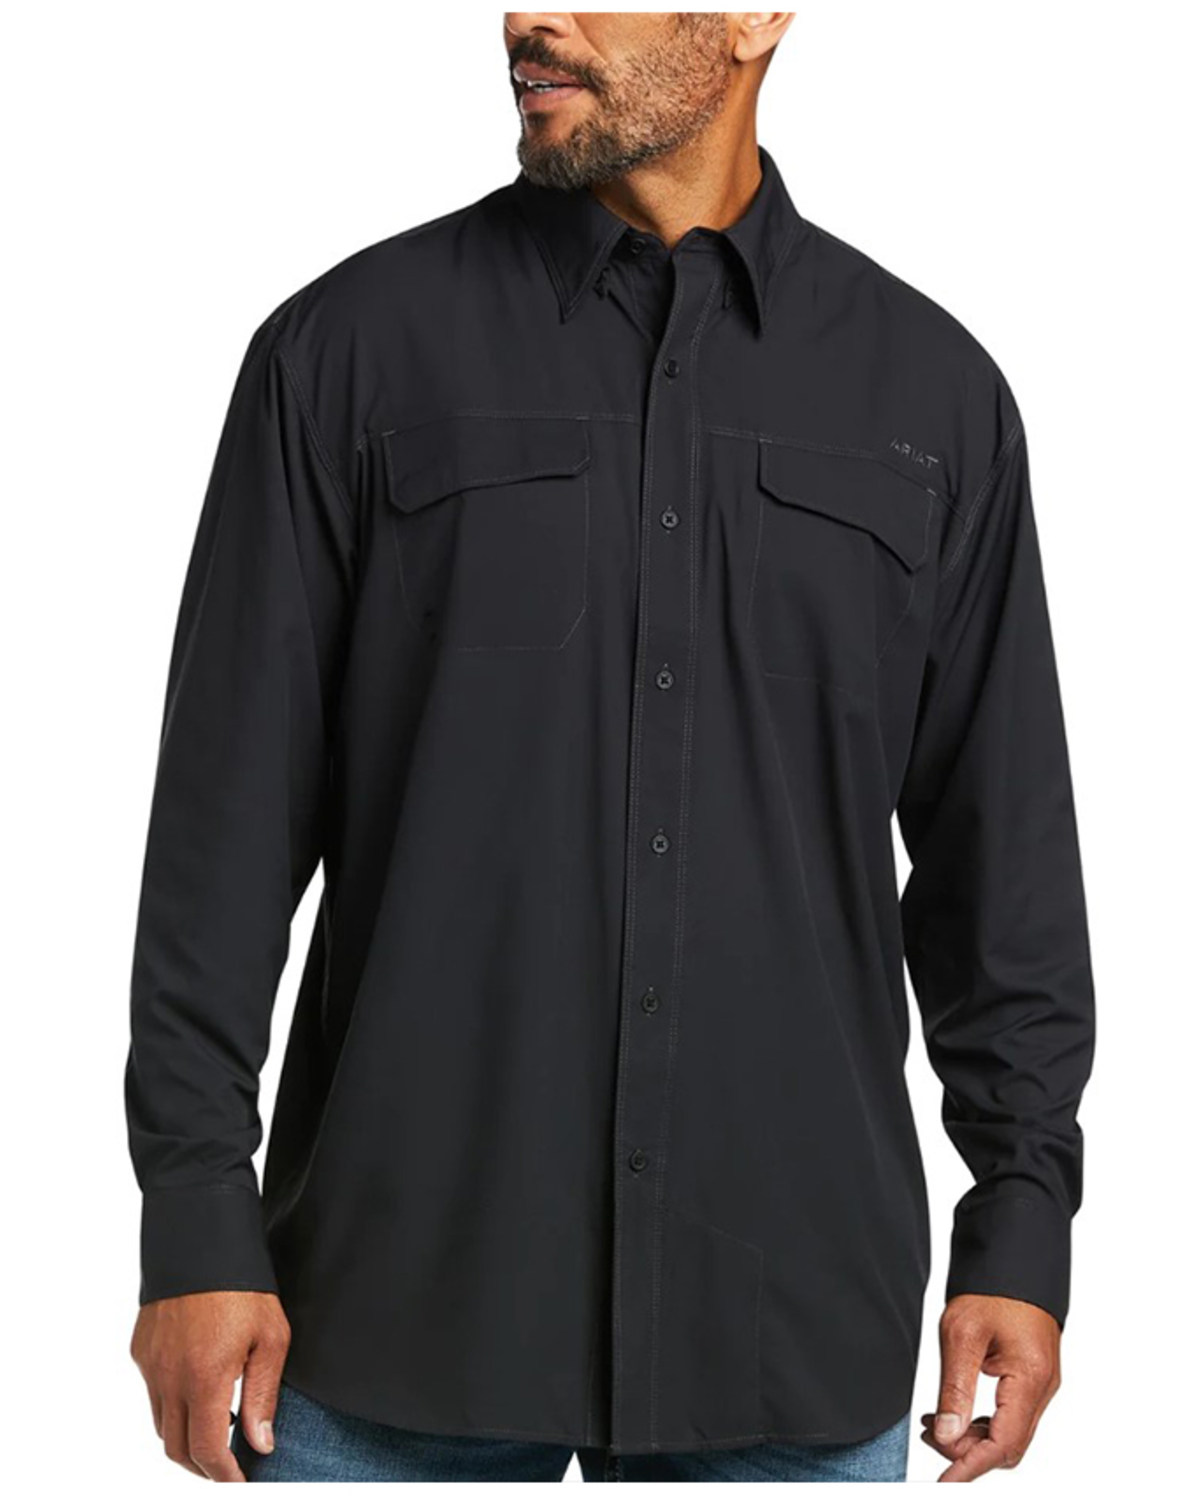 Ariat Men's VentTEK Outbound Long Sleeve Button-Down Shirt